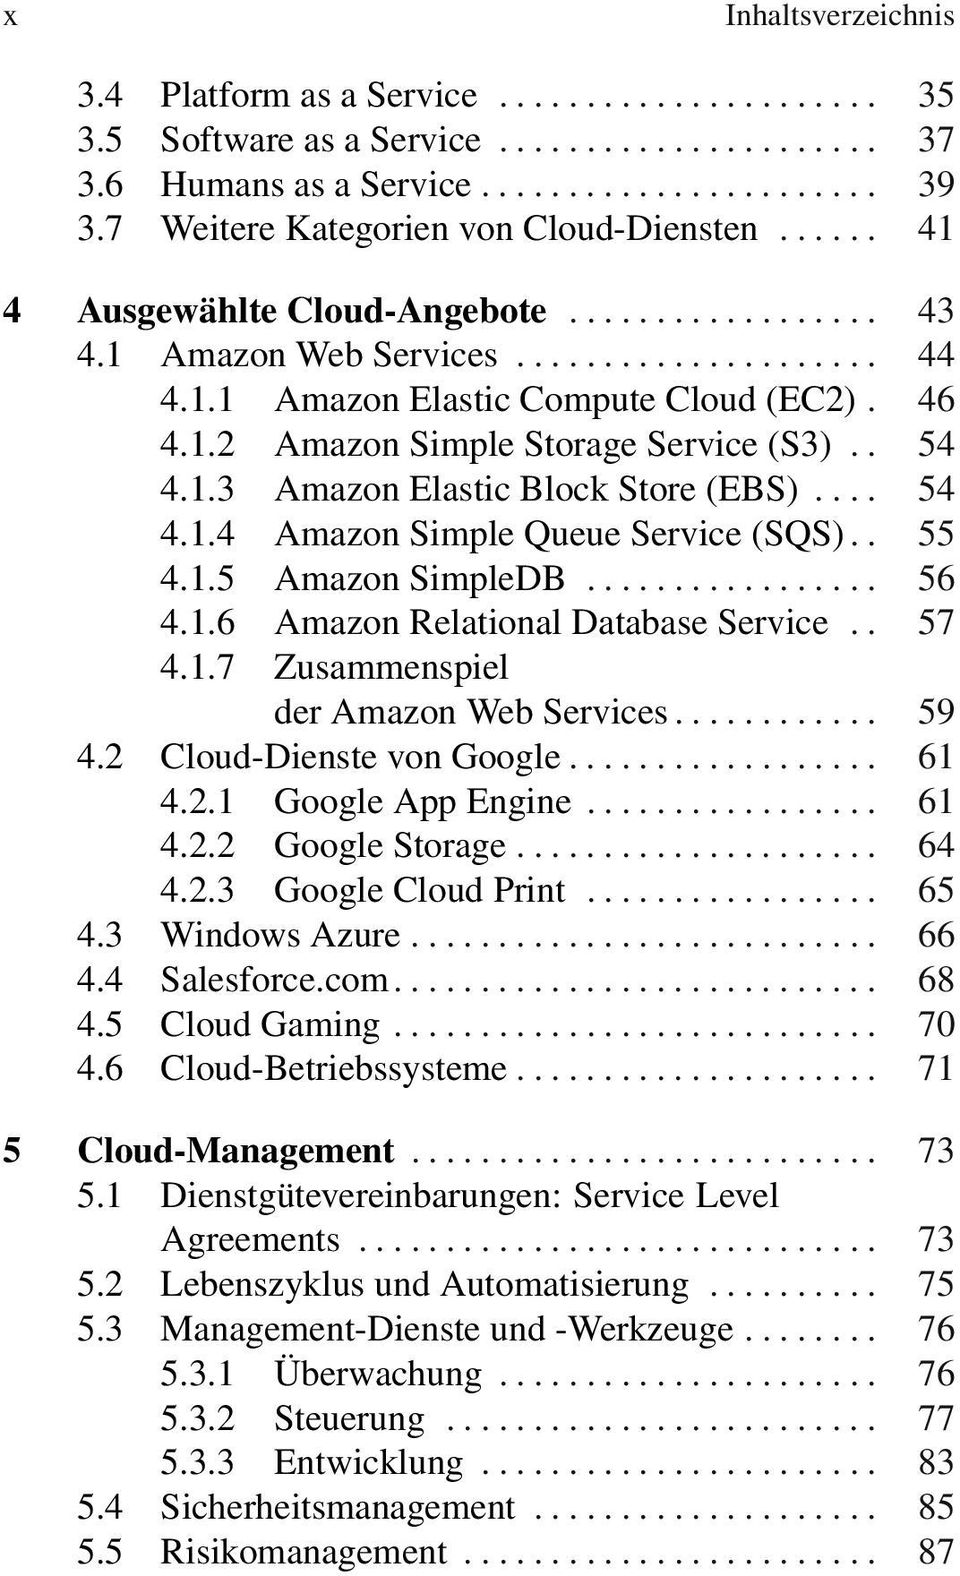 . 55 4.1.5 Amazon SimpleDB... 56 4.1.6 Amazon Relational Database Service.. 57 4.1.7 Zusammenspiel der Amazon Web Services... 59 4.2 Cloud-Dienste von Google... 61 4.2.1 Google App Engine... 61 4.2.2 Google Storage.